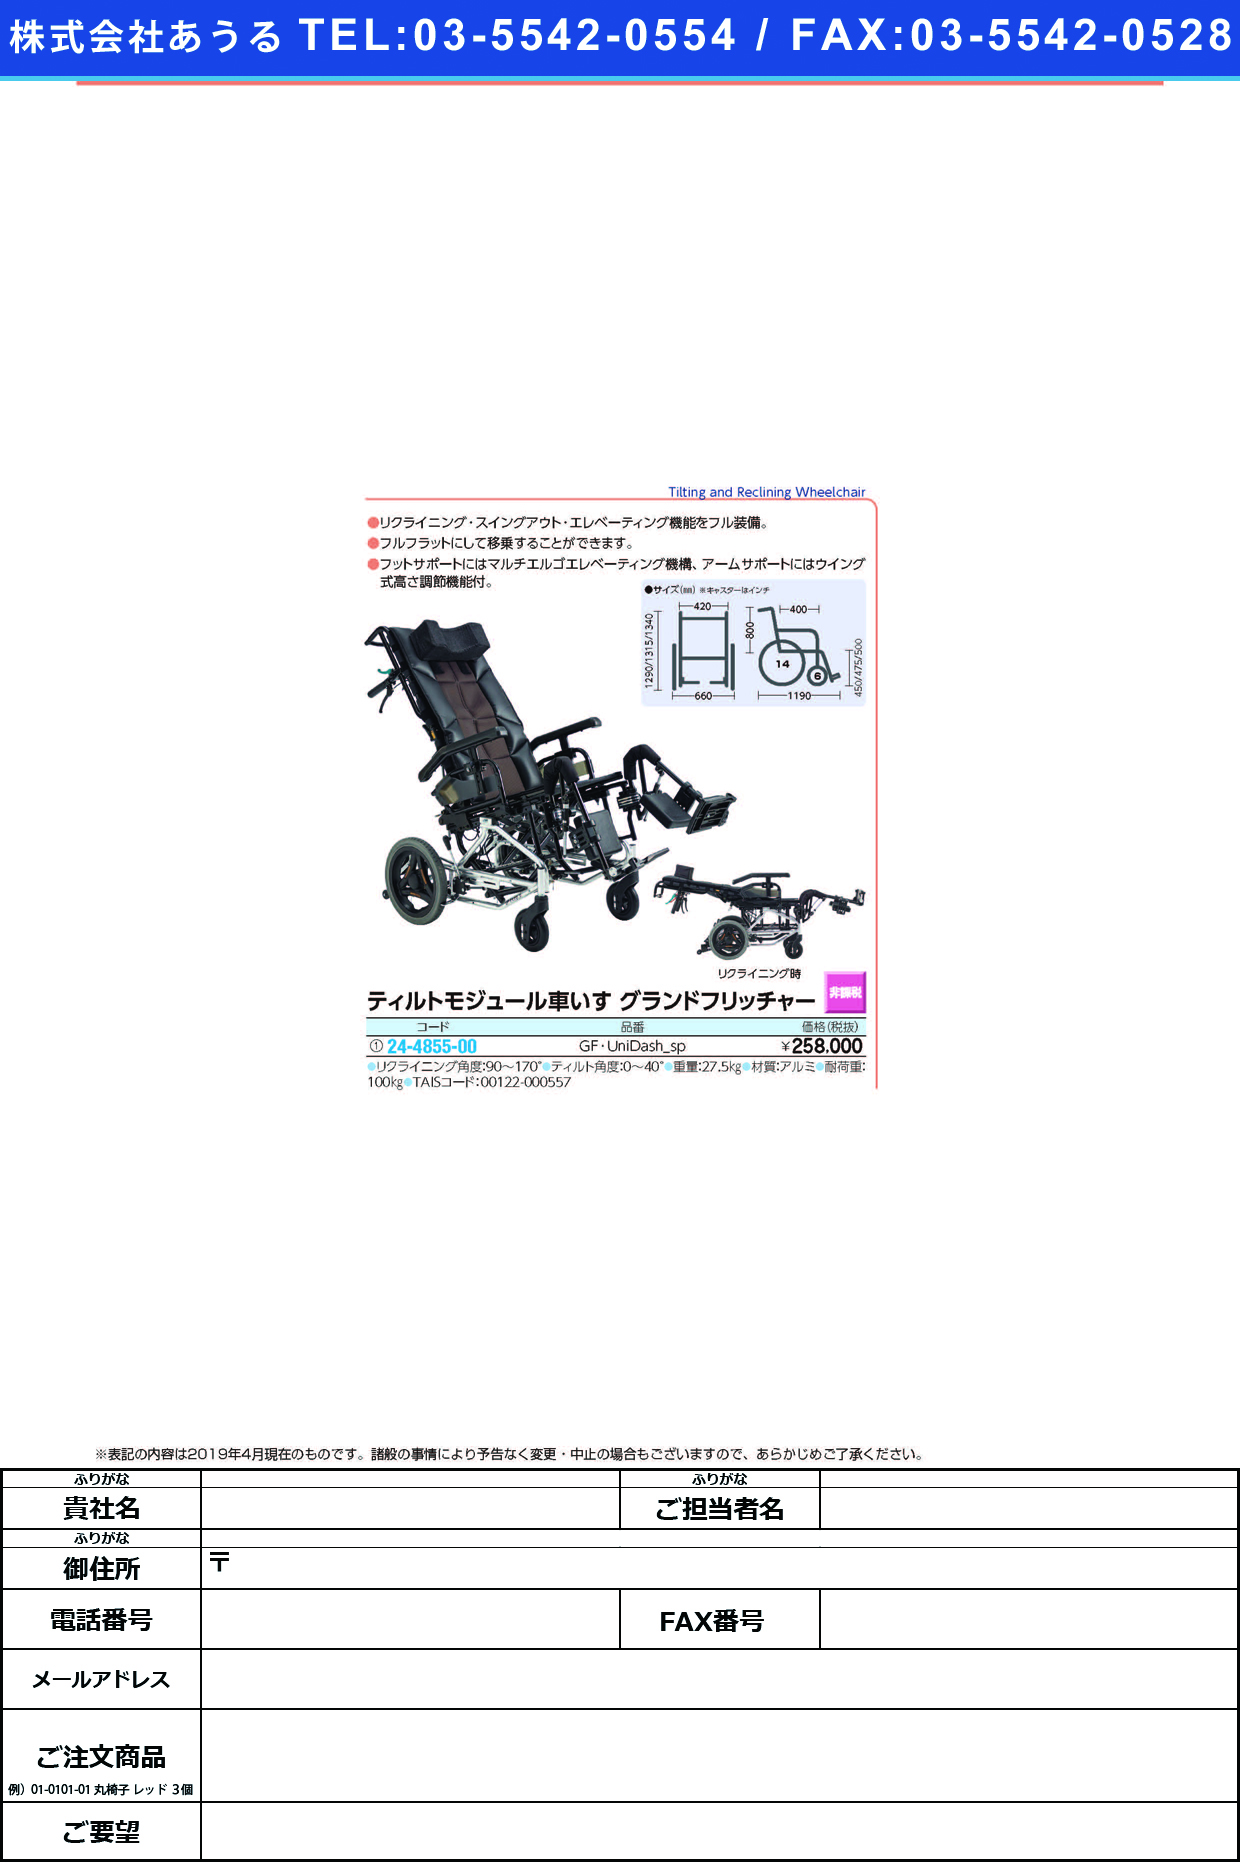 (24-4855-00)ティルトモジュール車いす GF･UNIDASH-SP ﾃｨﾙﾄﾓｼﾞｭｰﾙｸﾙﾏｲｽ(ミキ)【1台単位】【2019年カタログ商品】